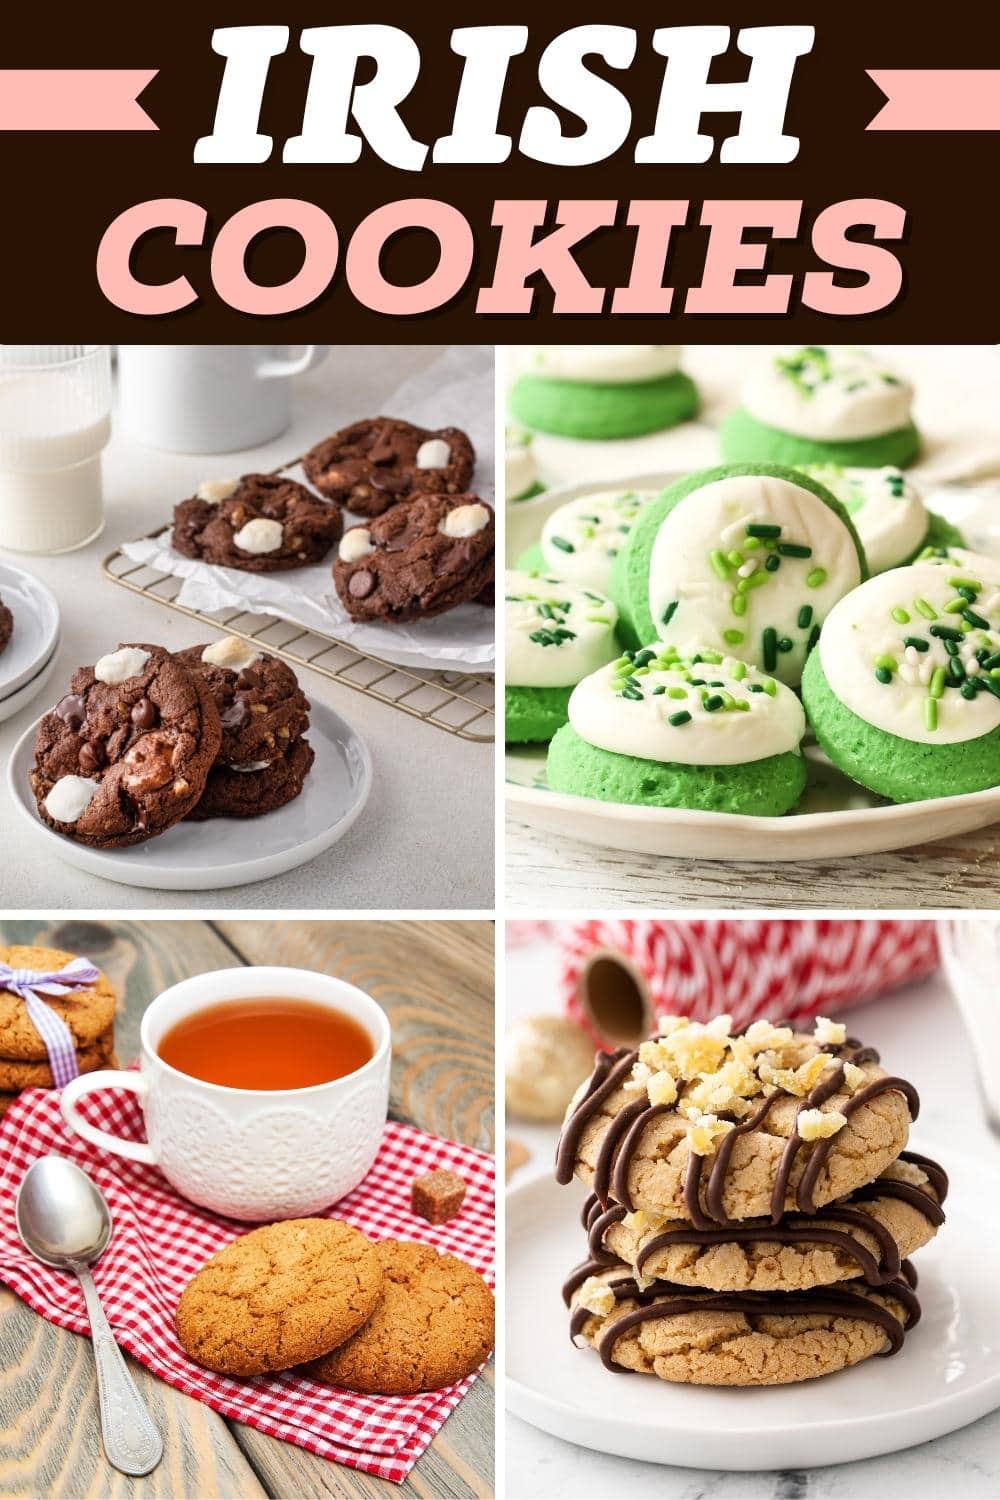 Irish Cookies